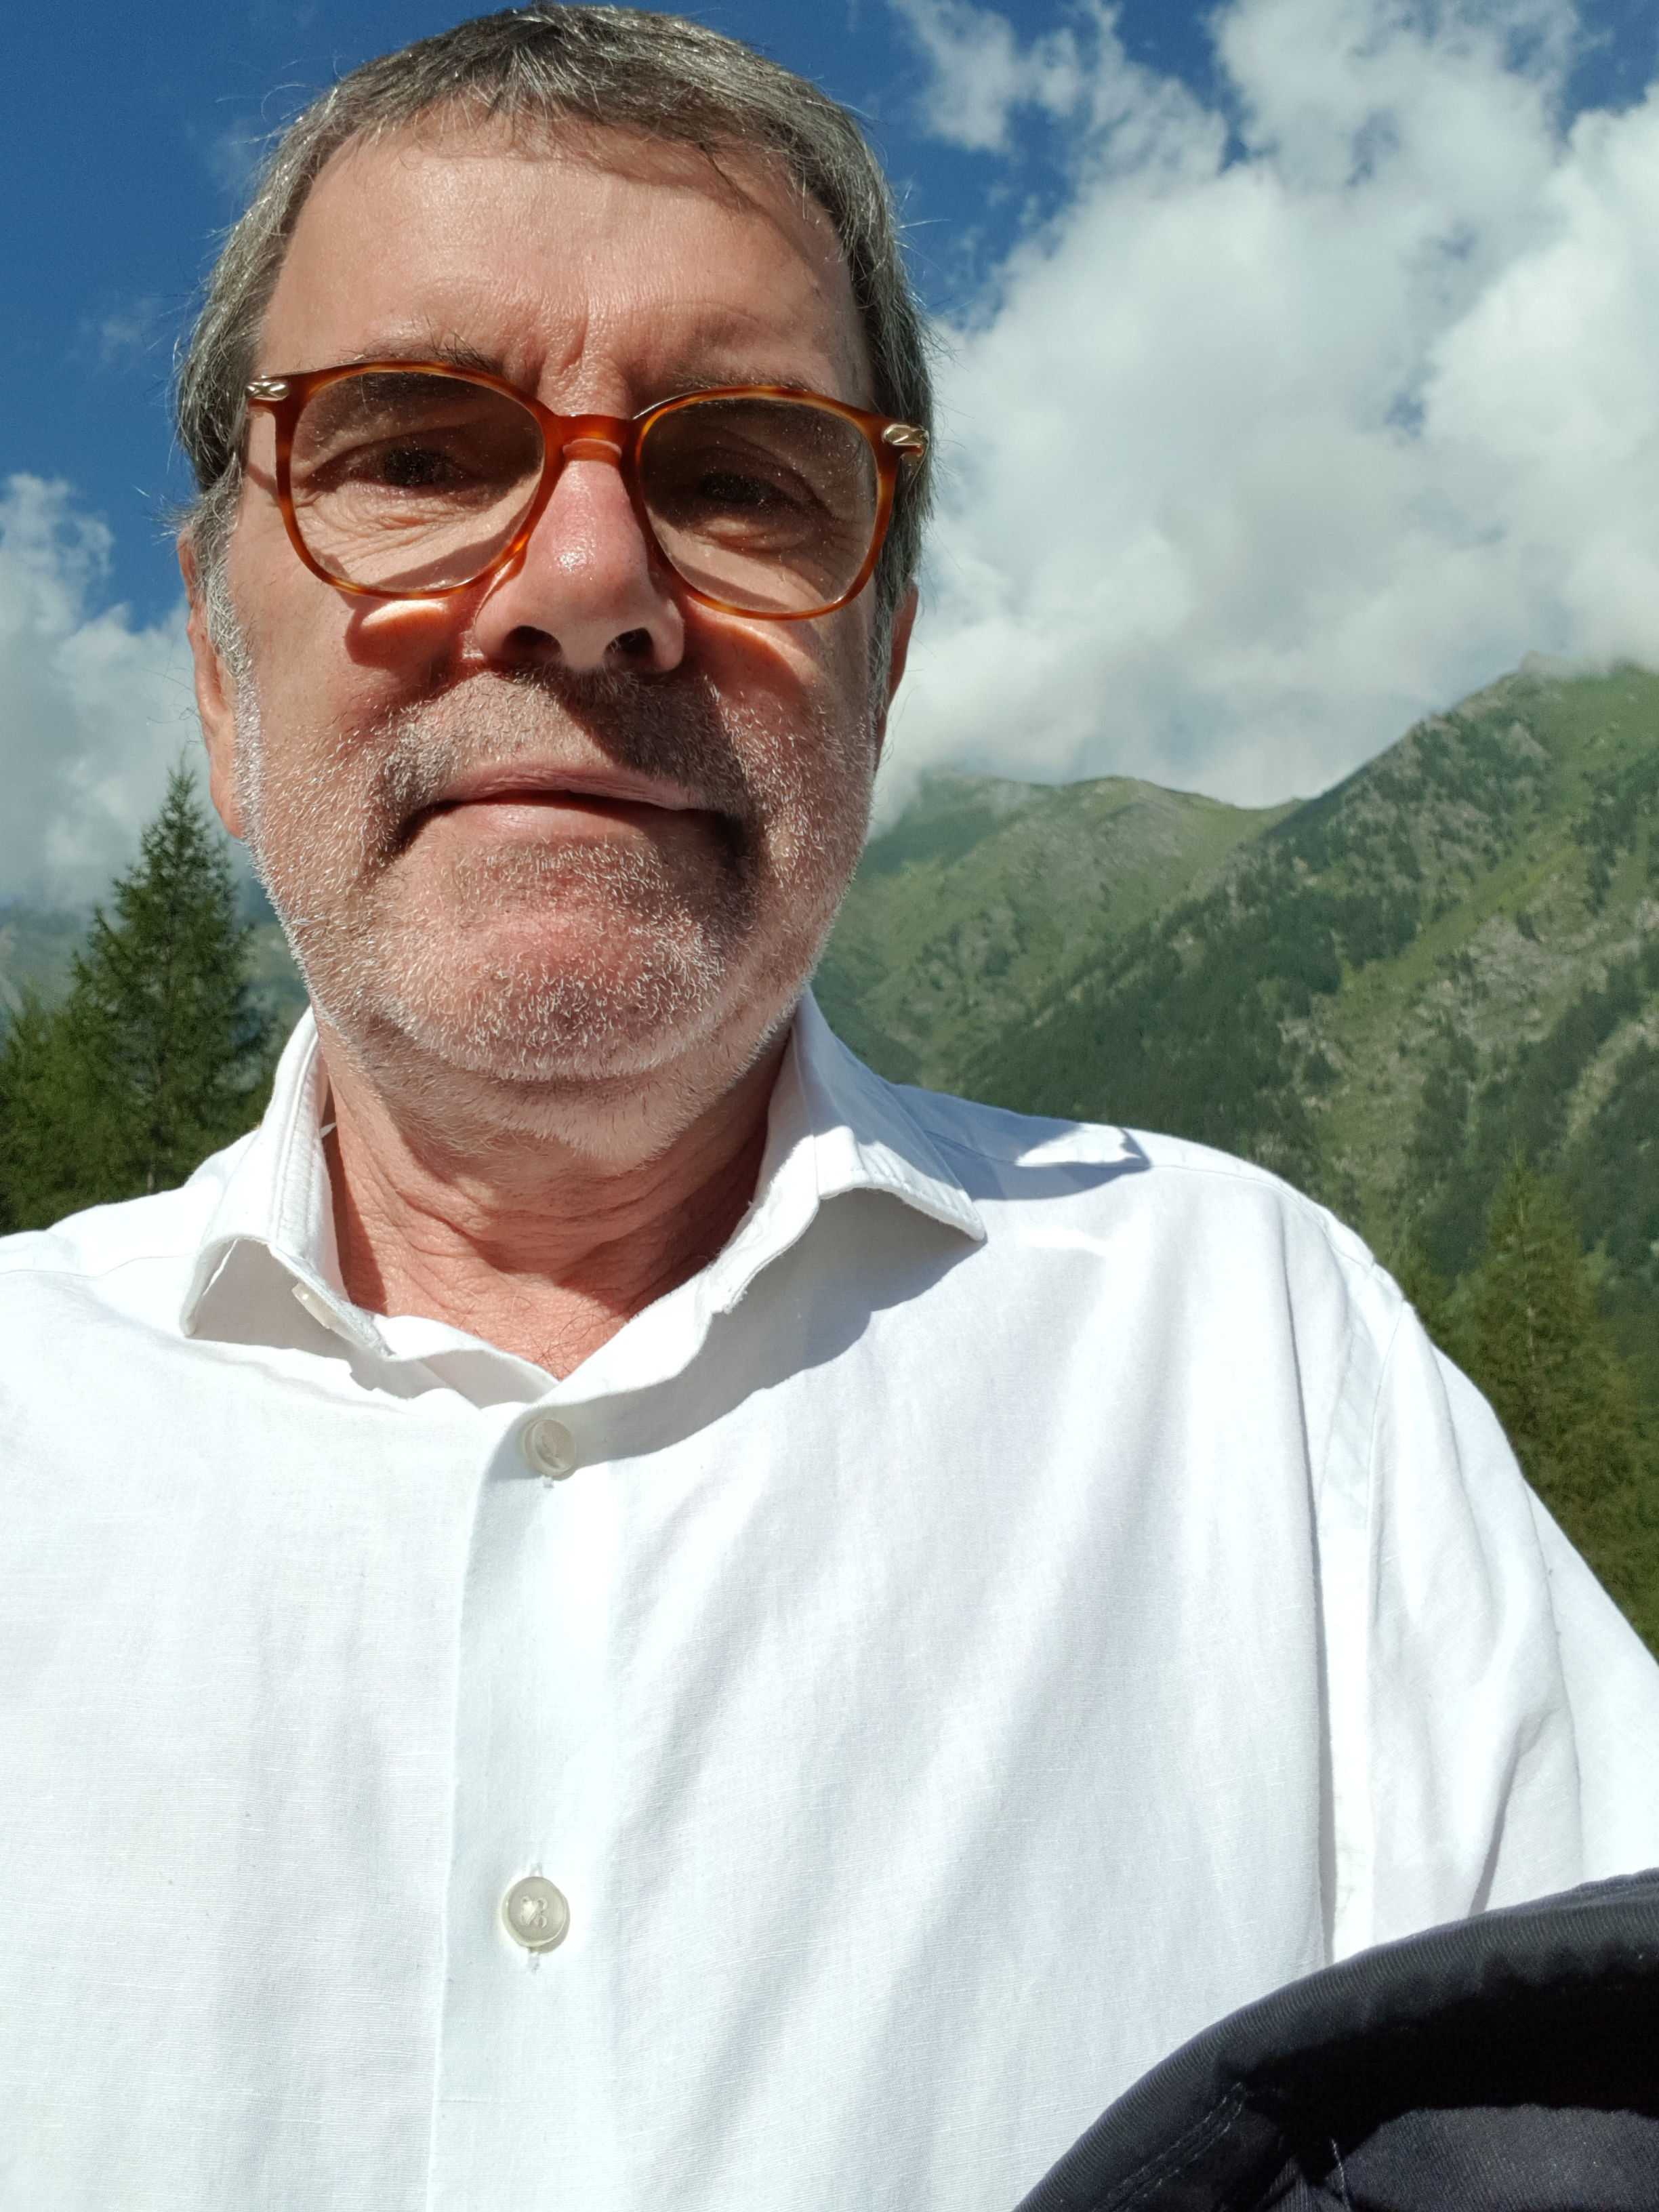 Burkhard visiting the Waldensian Valleys/ Northern Italy.